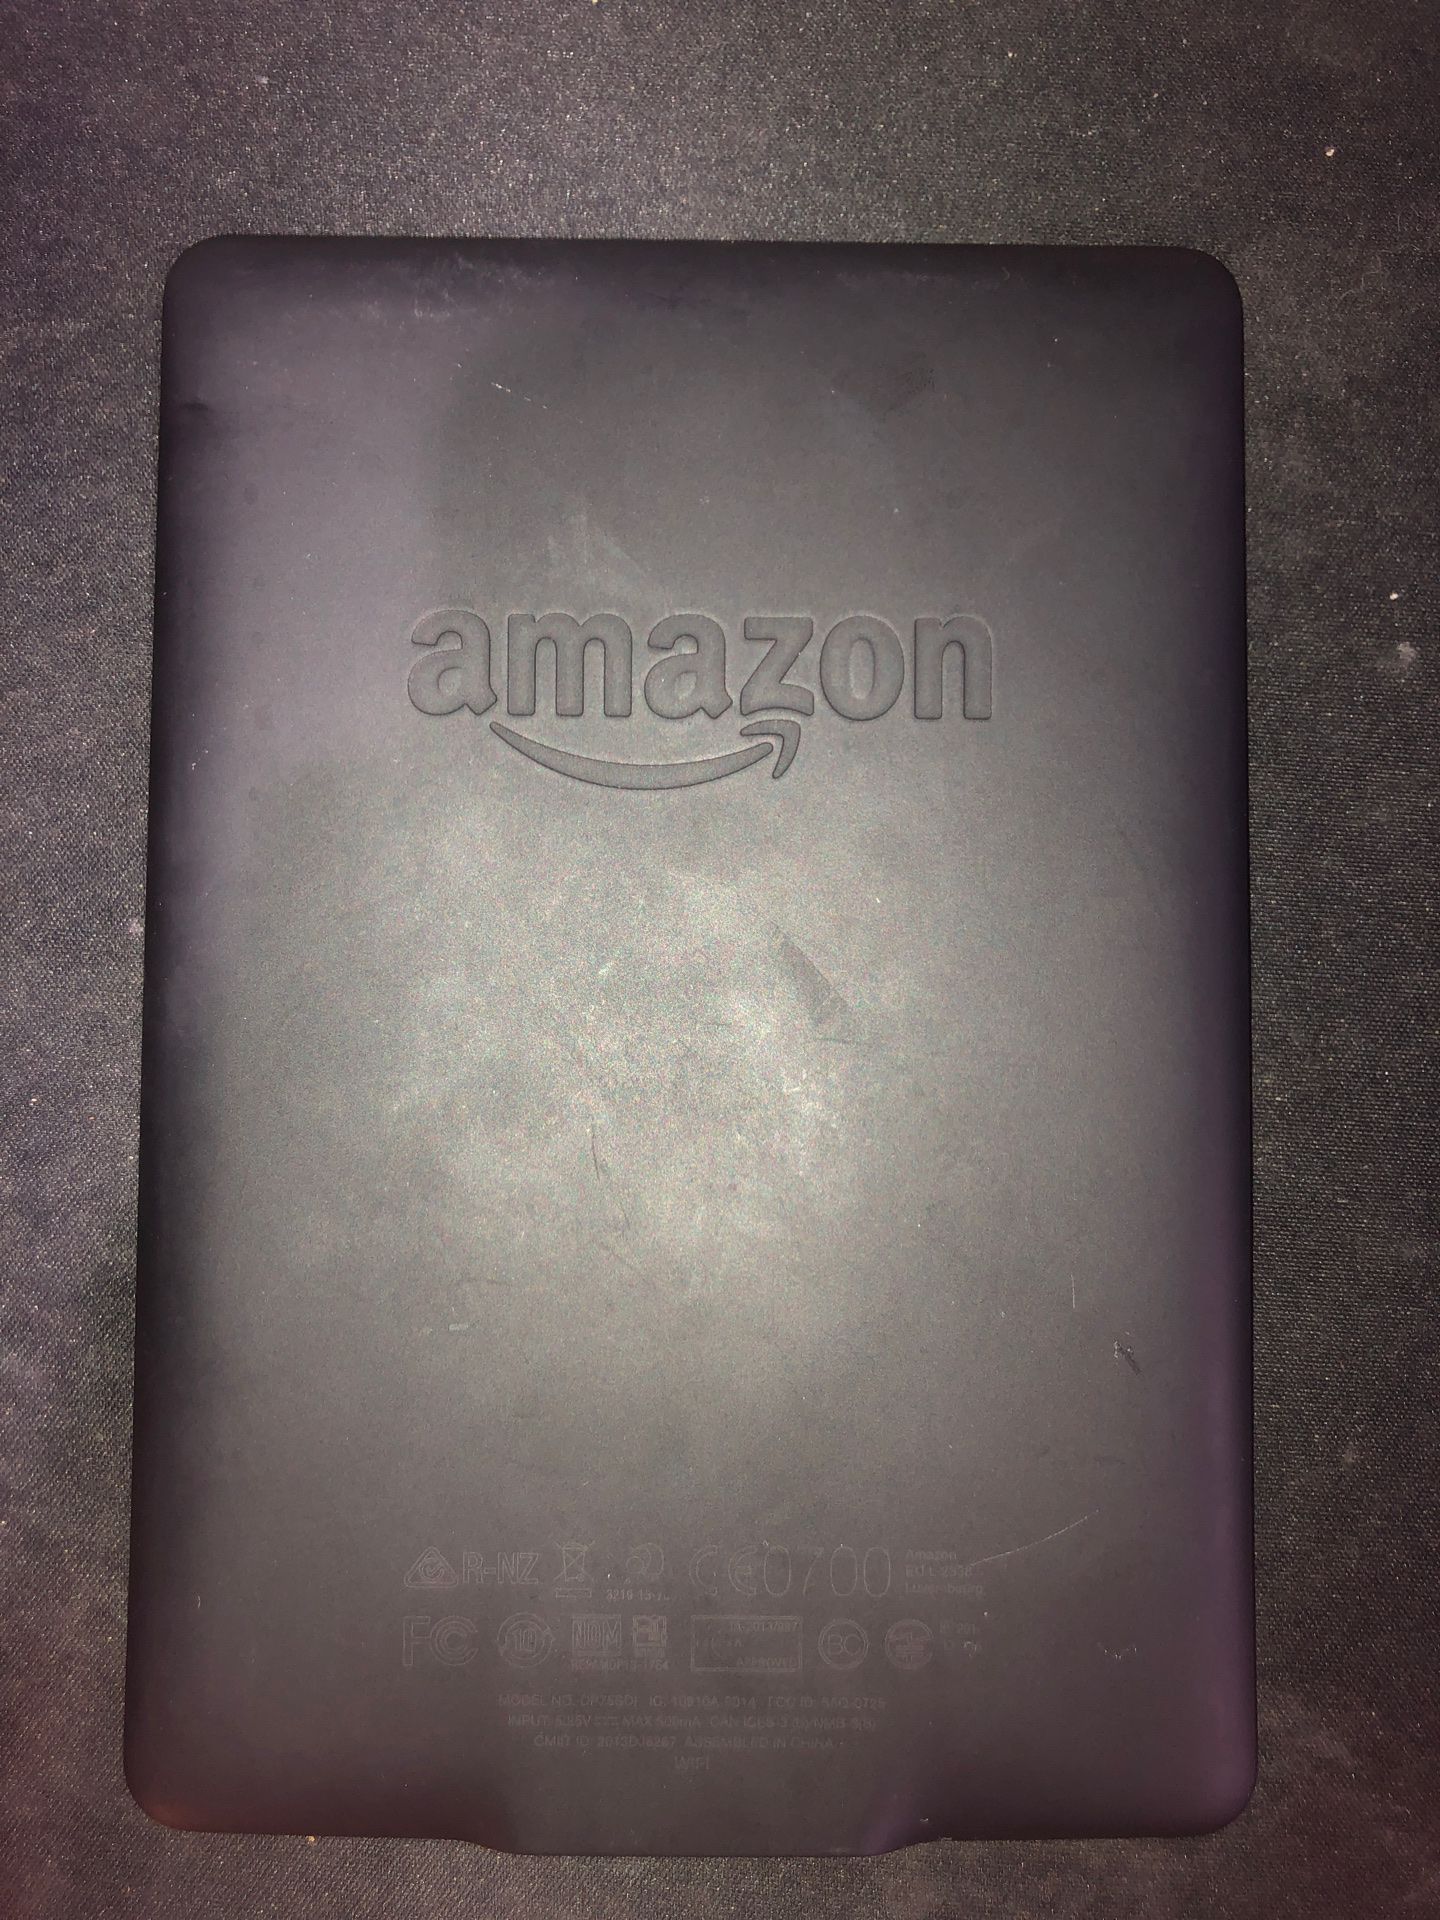 Amazon Kindle (Barely Used)